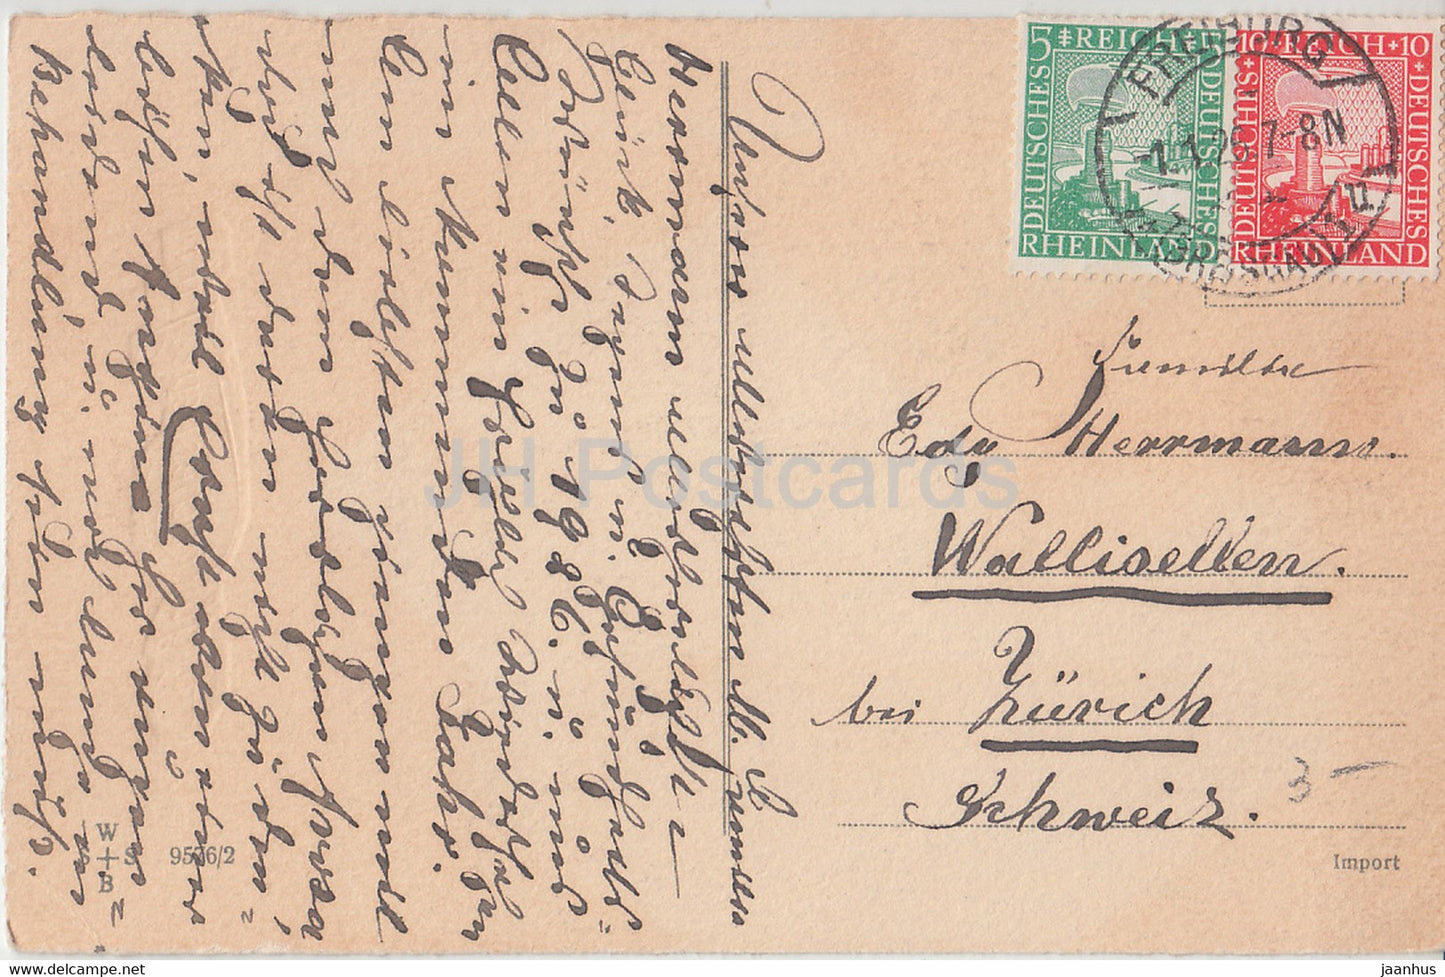 Carte de vœux du Nouvel An - Ein Gluckliches Neues Jahr - enfants - WSSB 9576/2 - carte postale ancienne - 1926 - Allemagne - utilisé